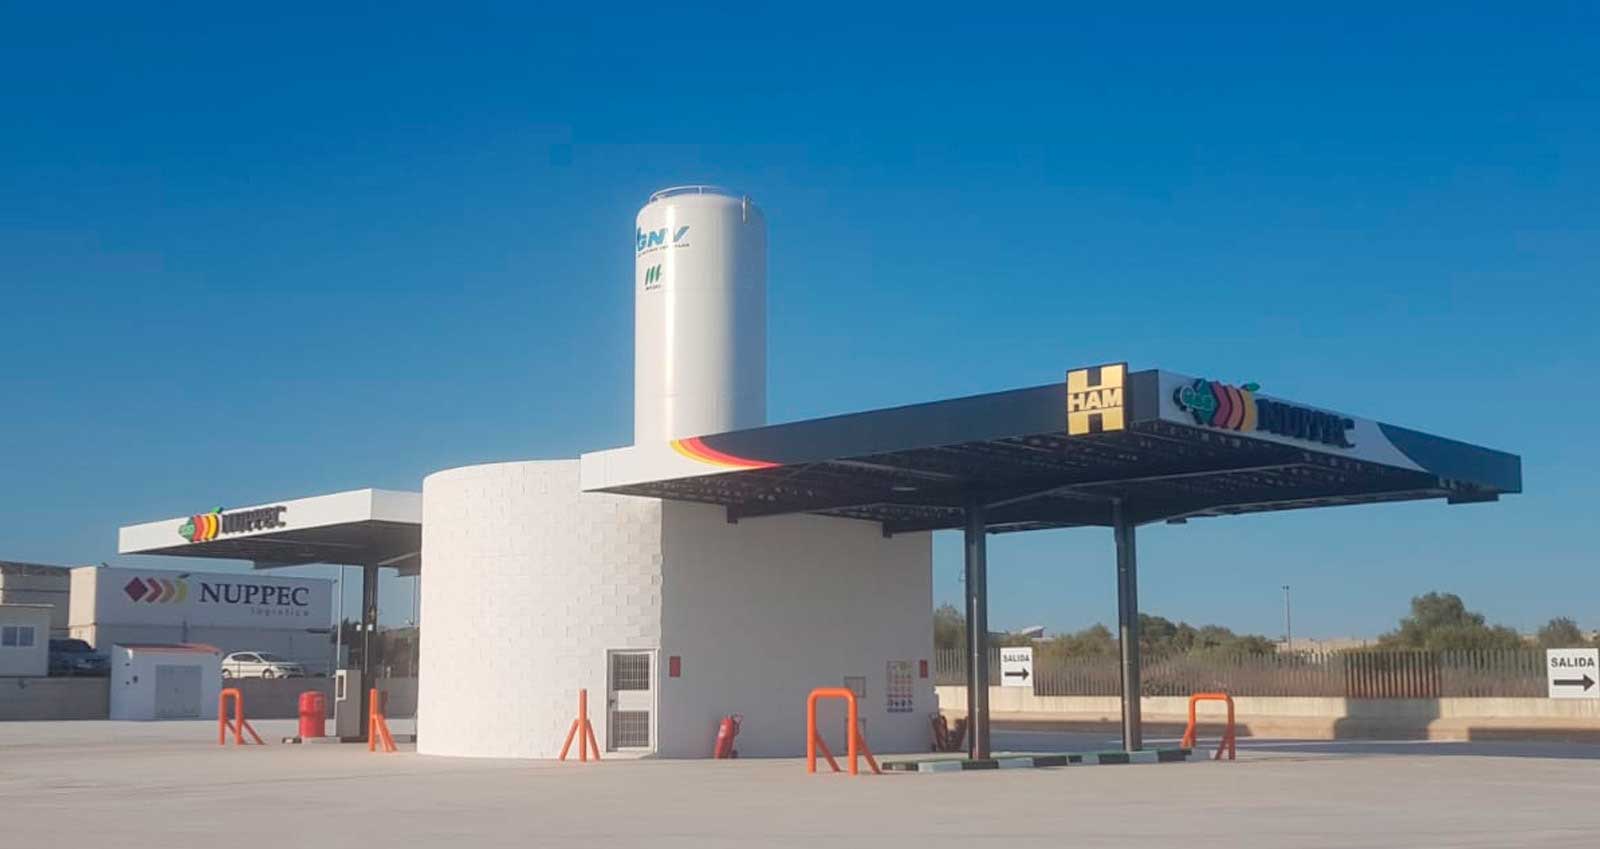 HAM y Nuppec abren en Villarreal la primera estación de servicio de gas natural licuado